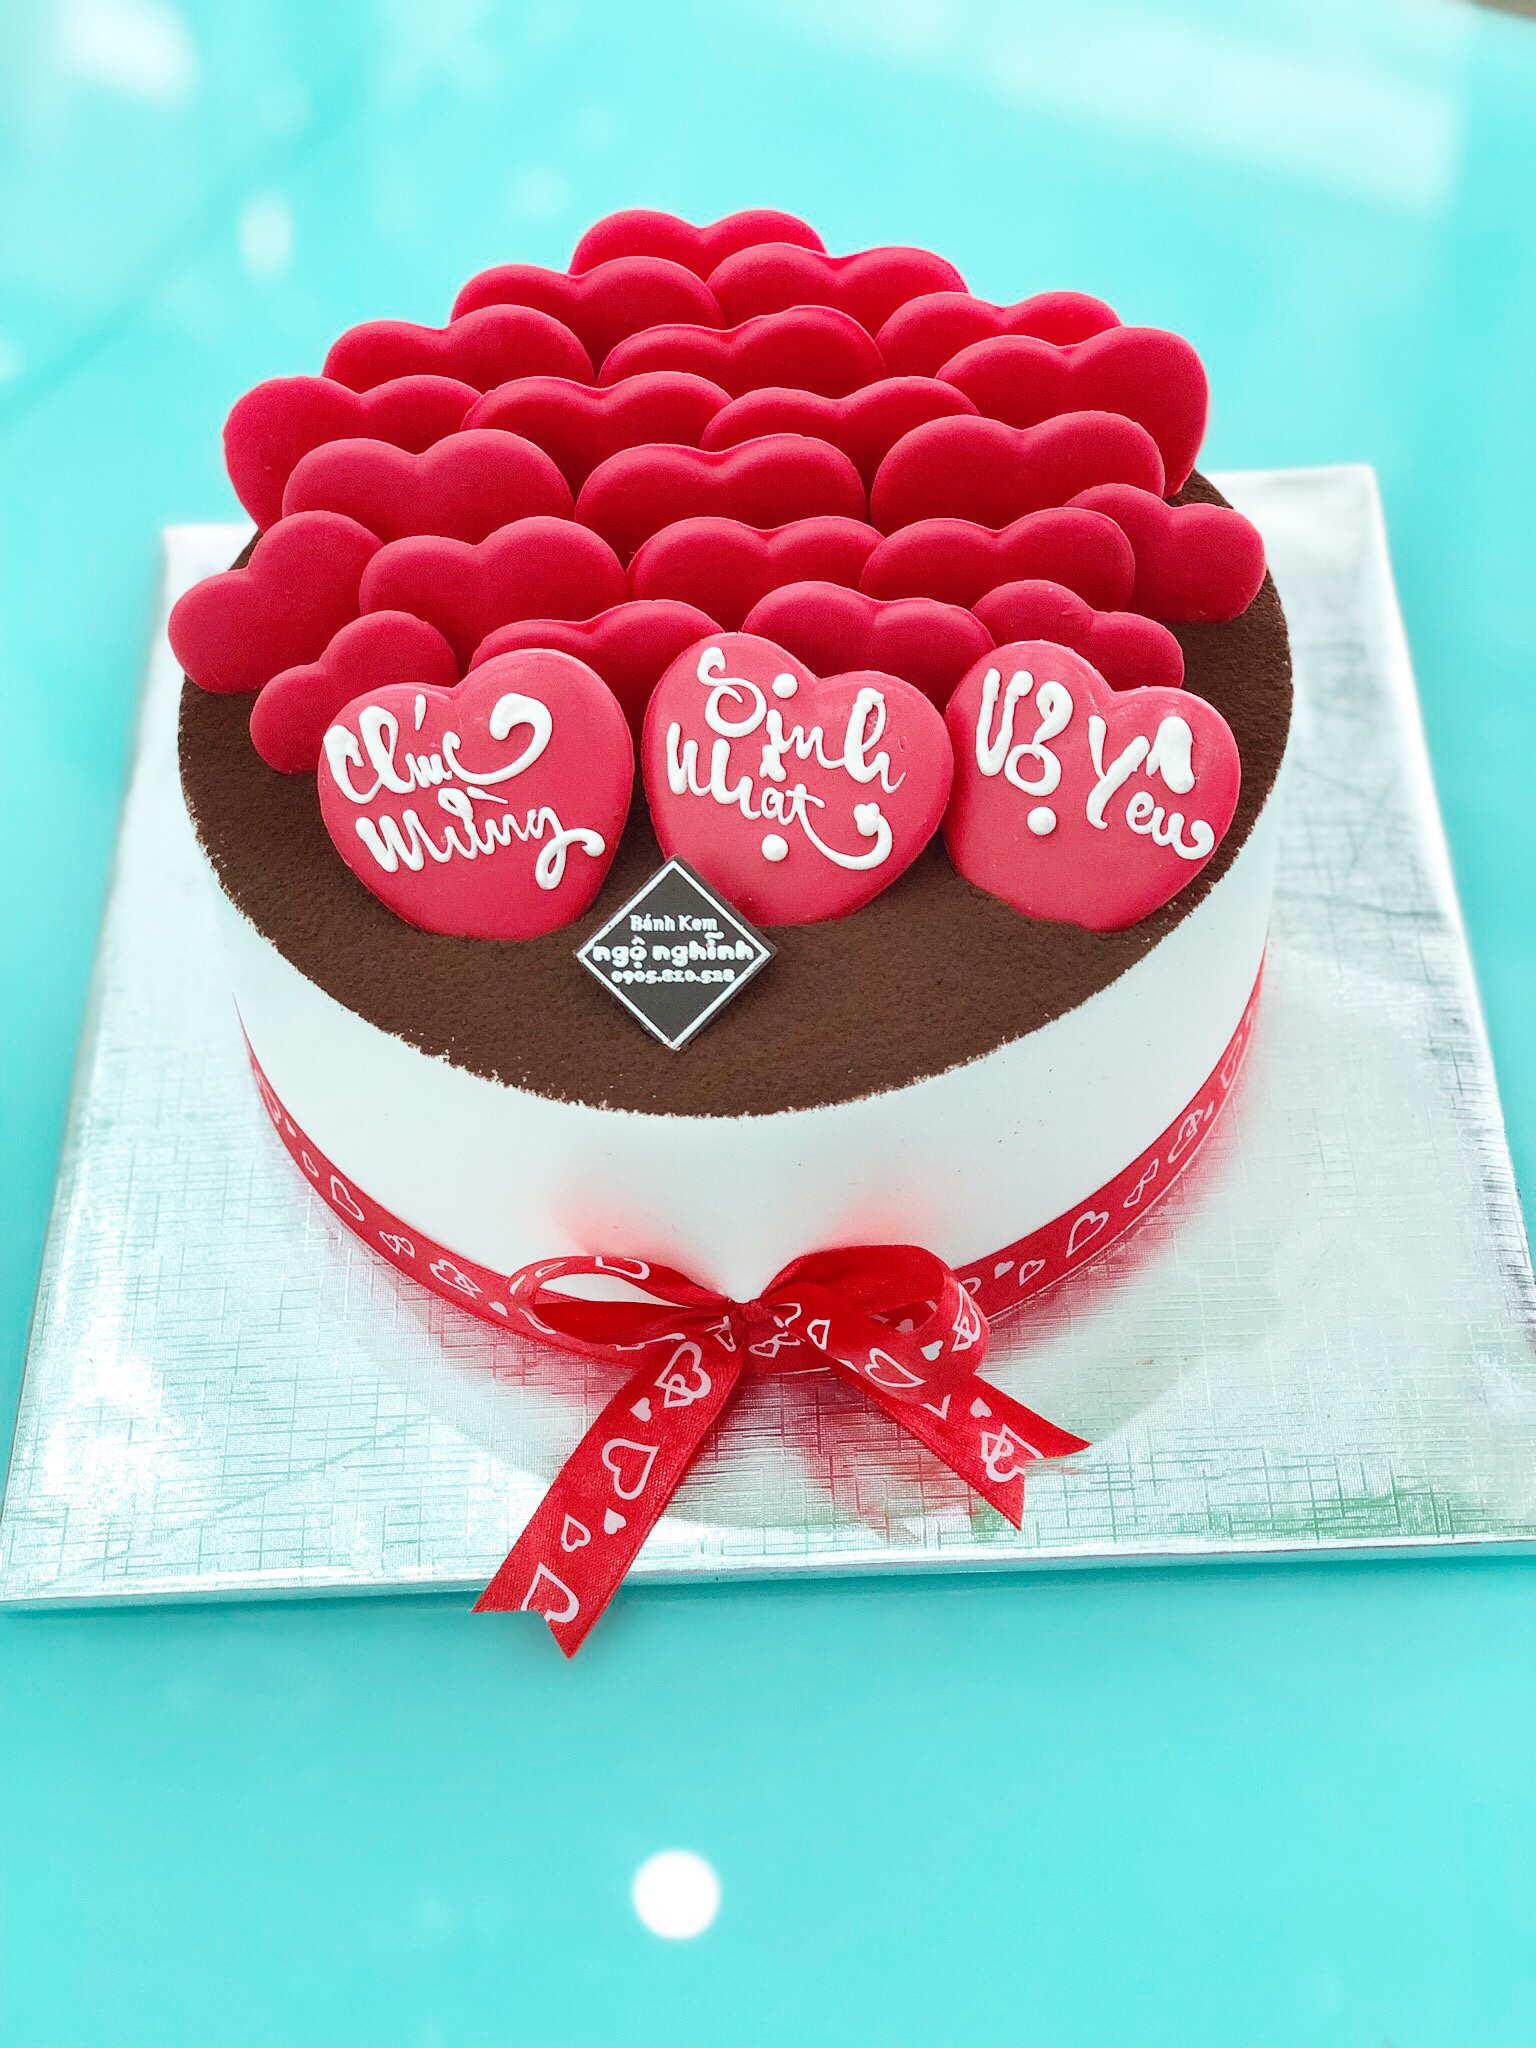 Một chiếc bánh sinh nhật socola tim đỏ thật đặc biệt cho người mà bạn yêu thương nhất. Hãy để nó trở thành món quà tuyệt vời cho ngày sinh nhật đặc biệt của họ. Đừng quên chụp ảnh và giữ lại những kỷ niệm đẹp dành cho hai người.